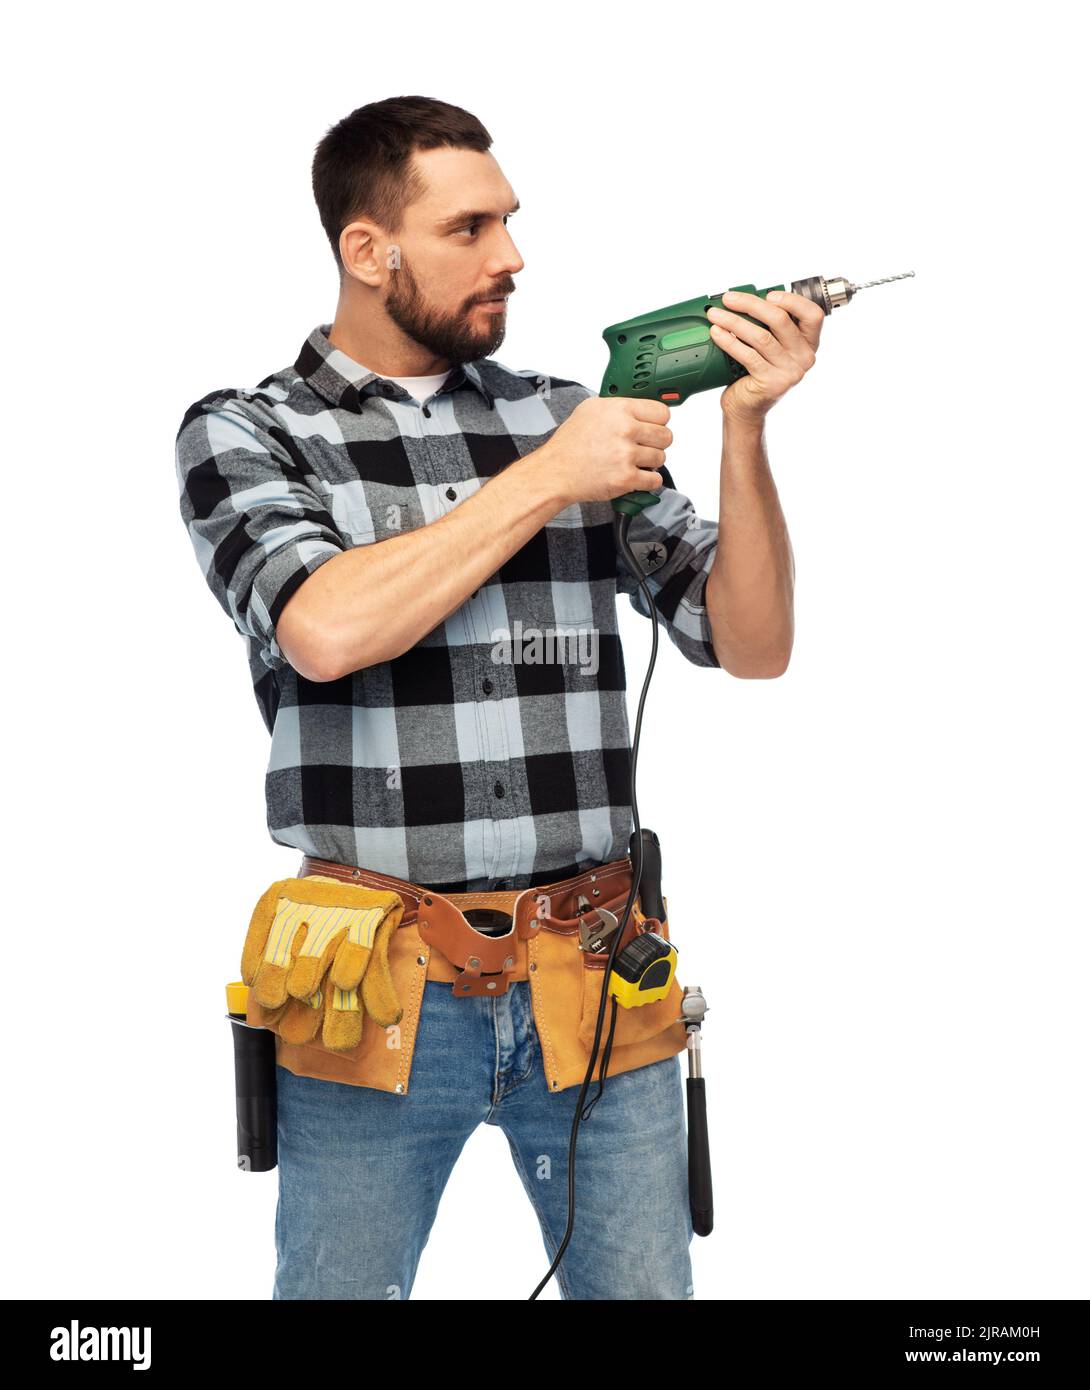 homme ouvrier ou constructeur avec perceuse et outils Banque D'Images